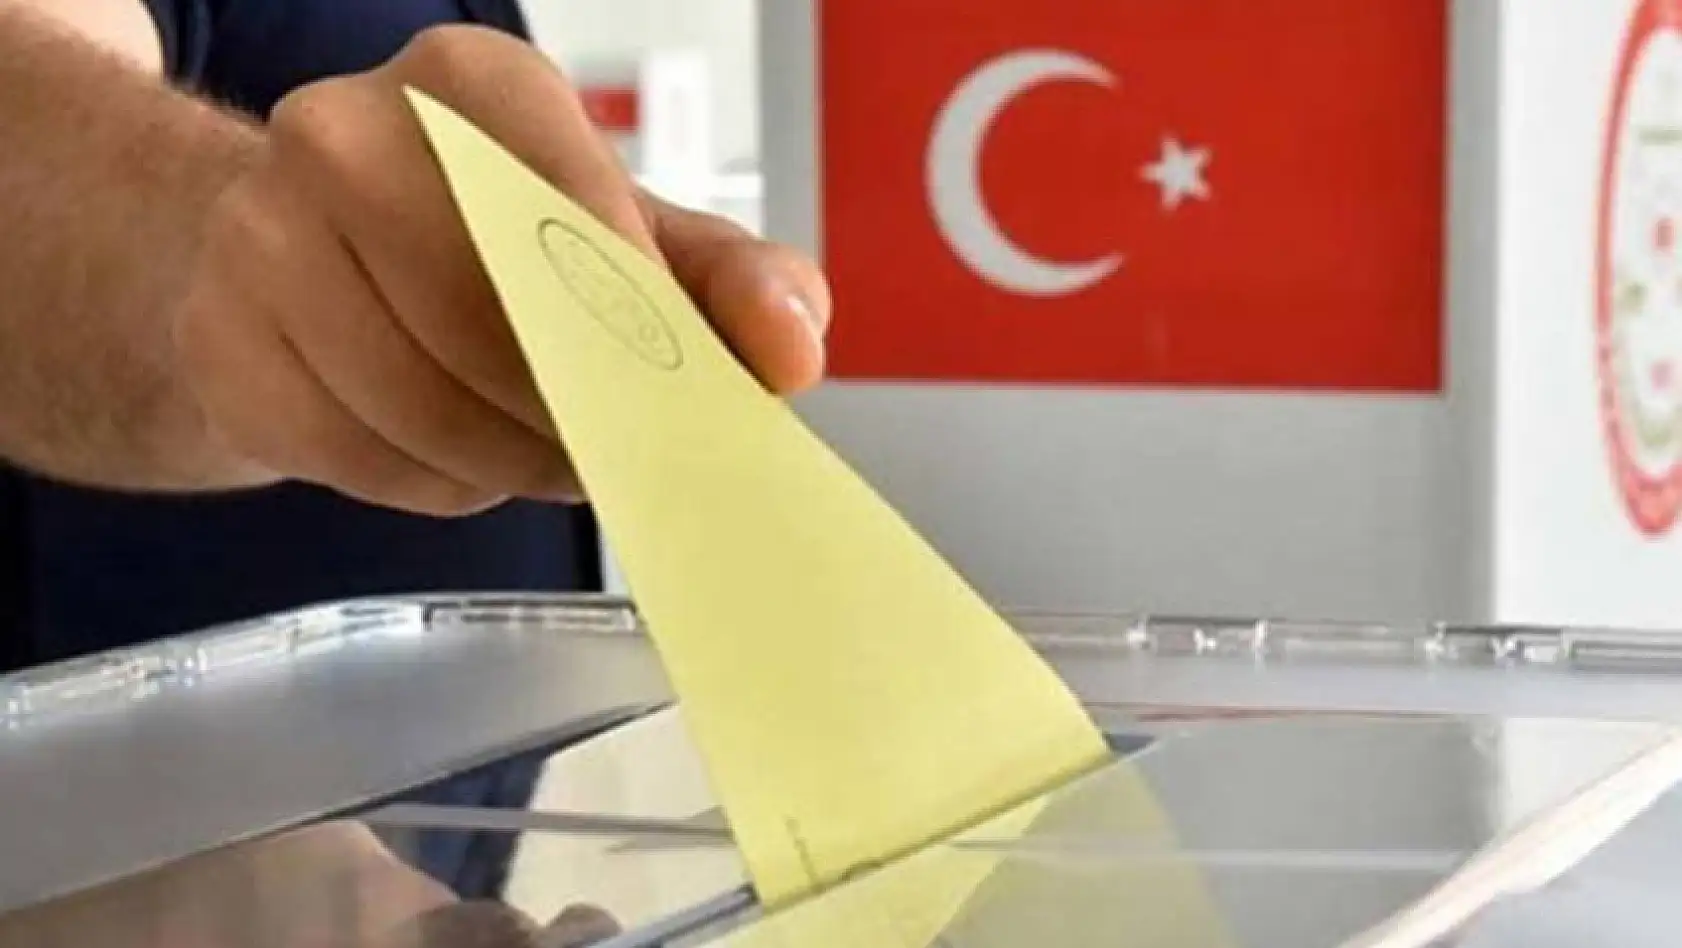 Türkiye'de seçim sistemi değişiyor